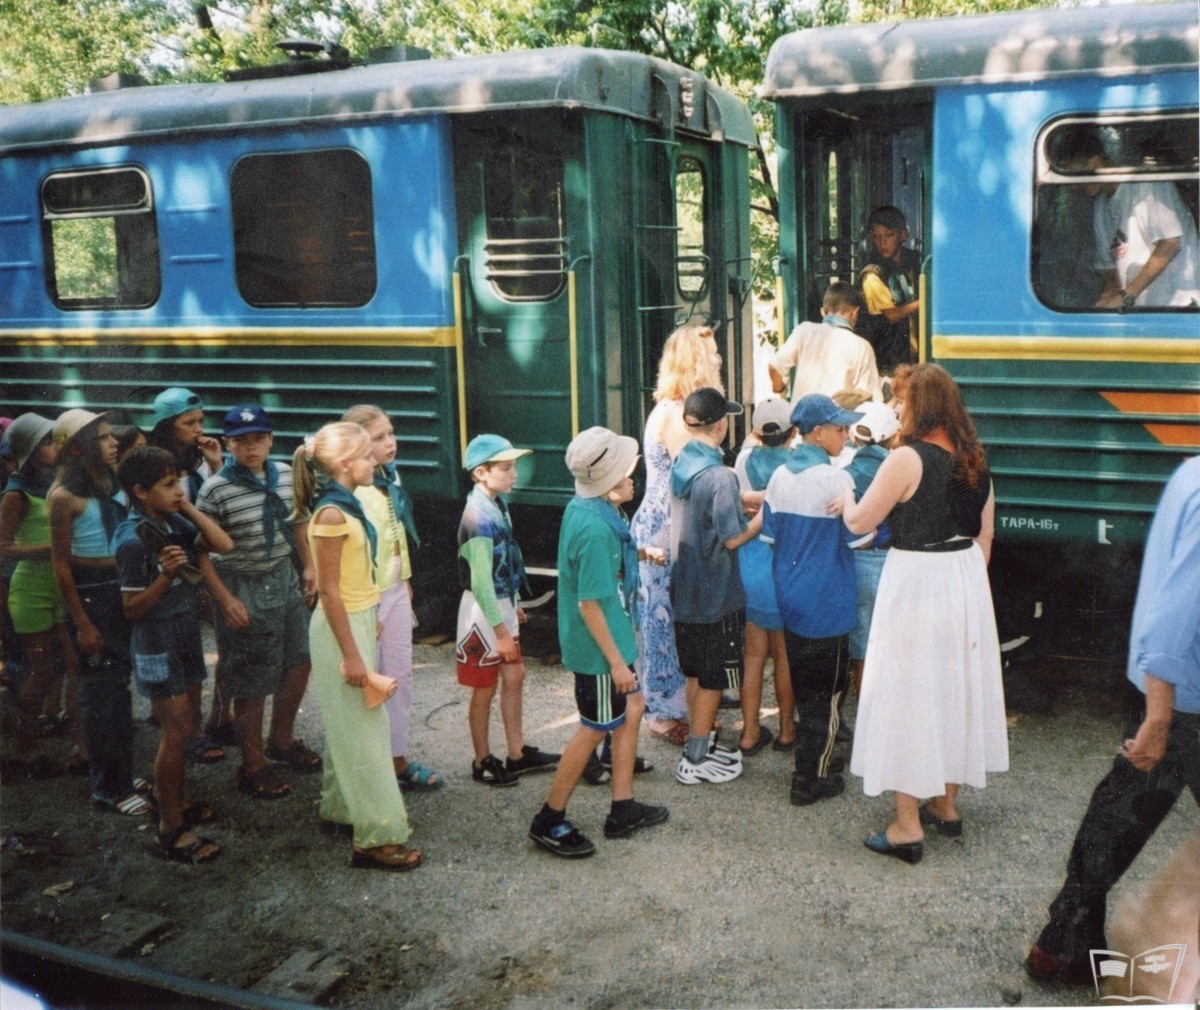 Посадка пассажиров в поезд 